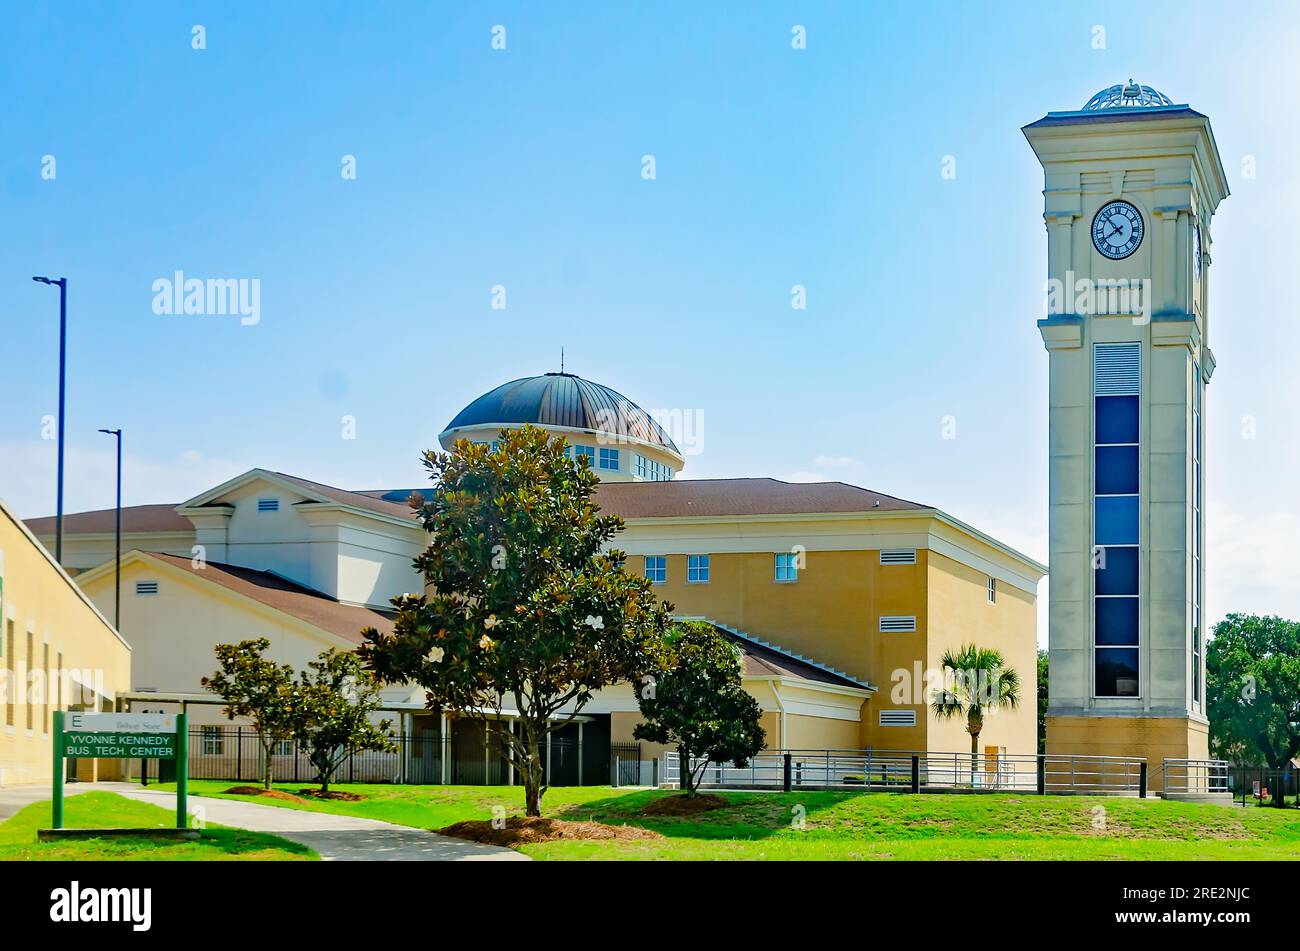 Lo Yvonne Kennedy Business Technology Center, insieme alla torre dell'orologio, è raffigurato al Bishop State Community College di Mobile, Alabama. Foto Stock